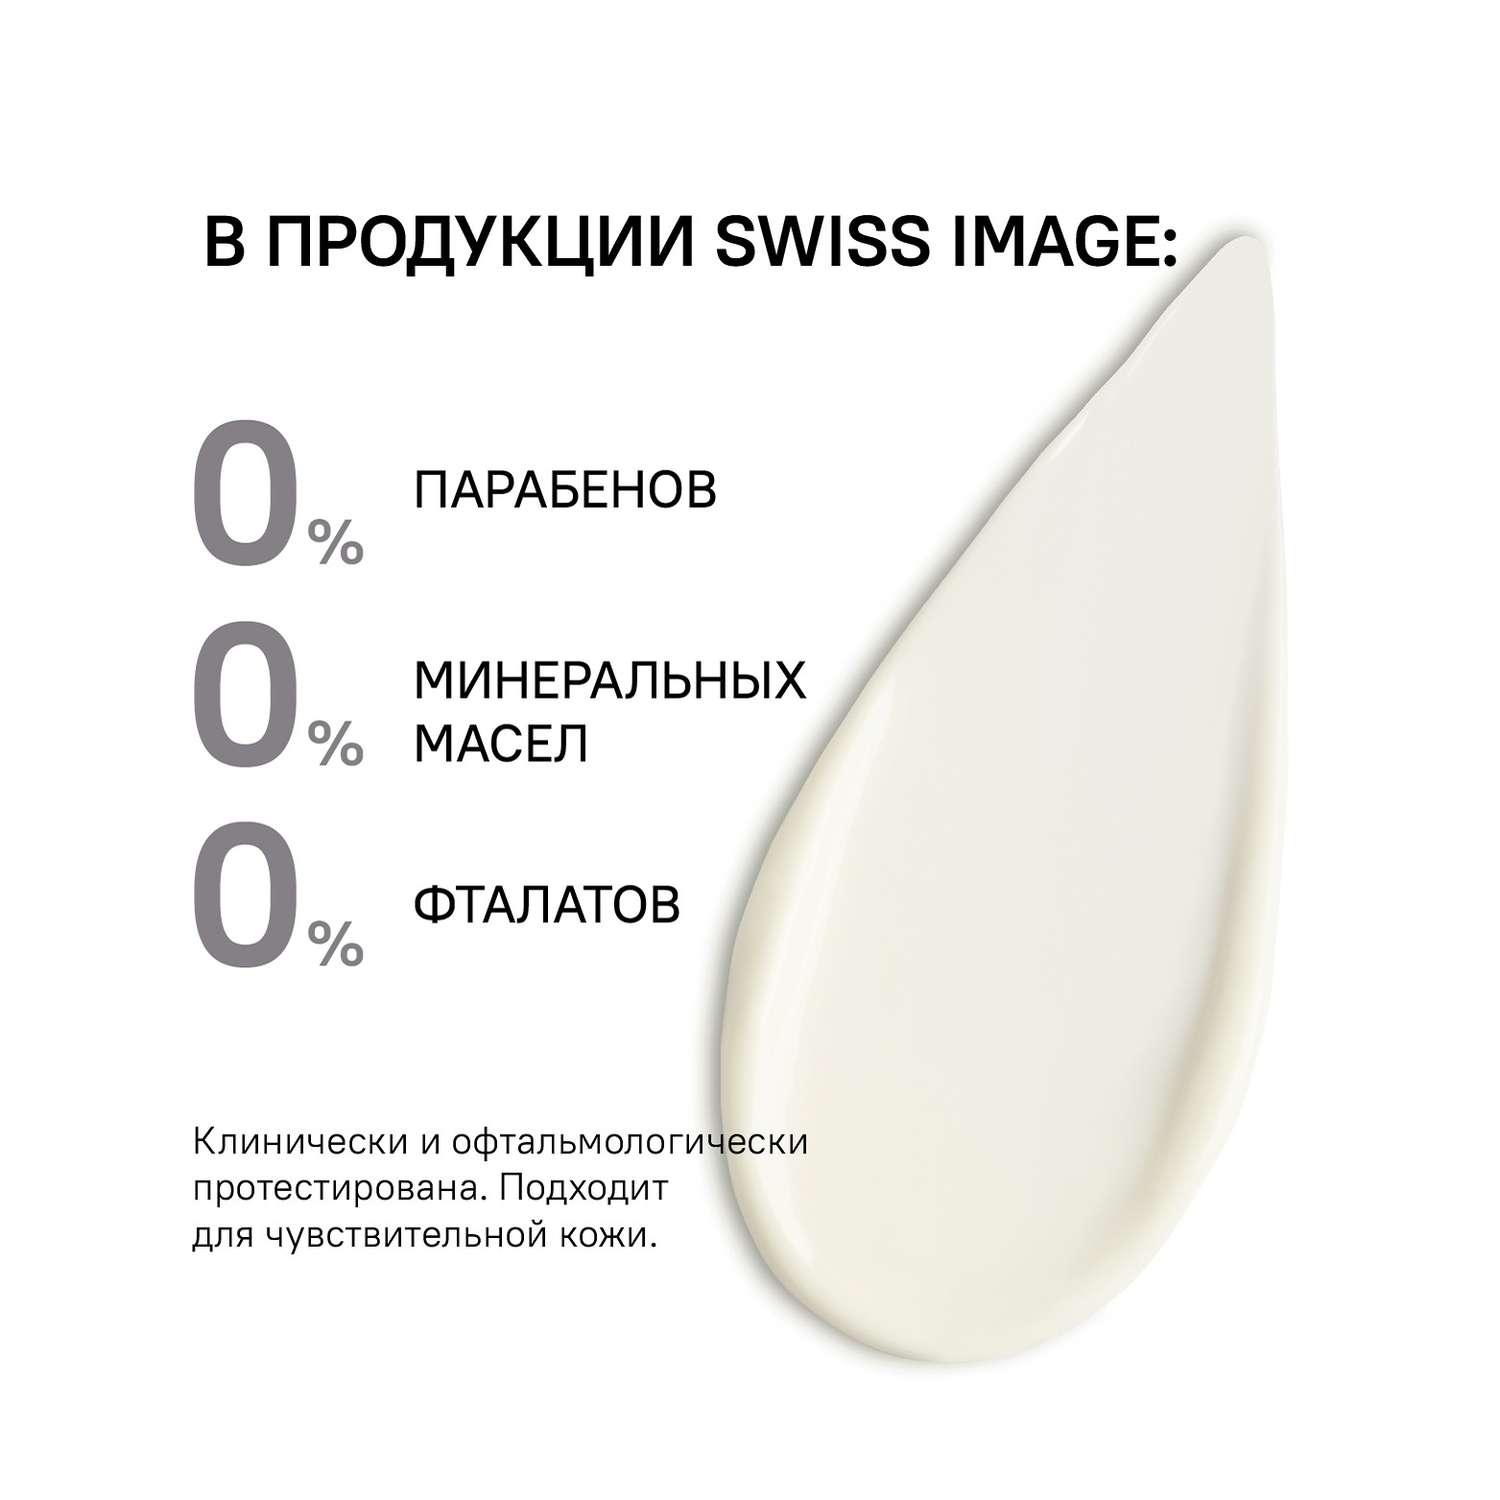 Осветляющий ночной крем Swiss image для лица выравнивающий тон кожи 50 мл - фото 10